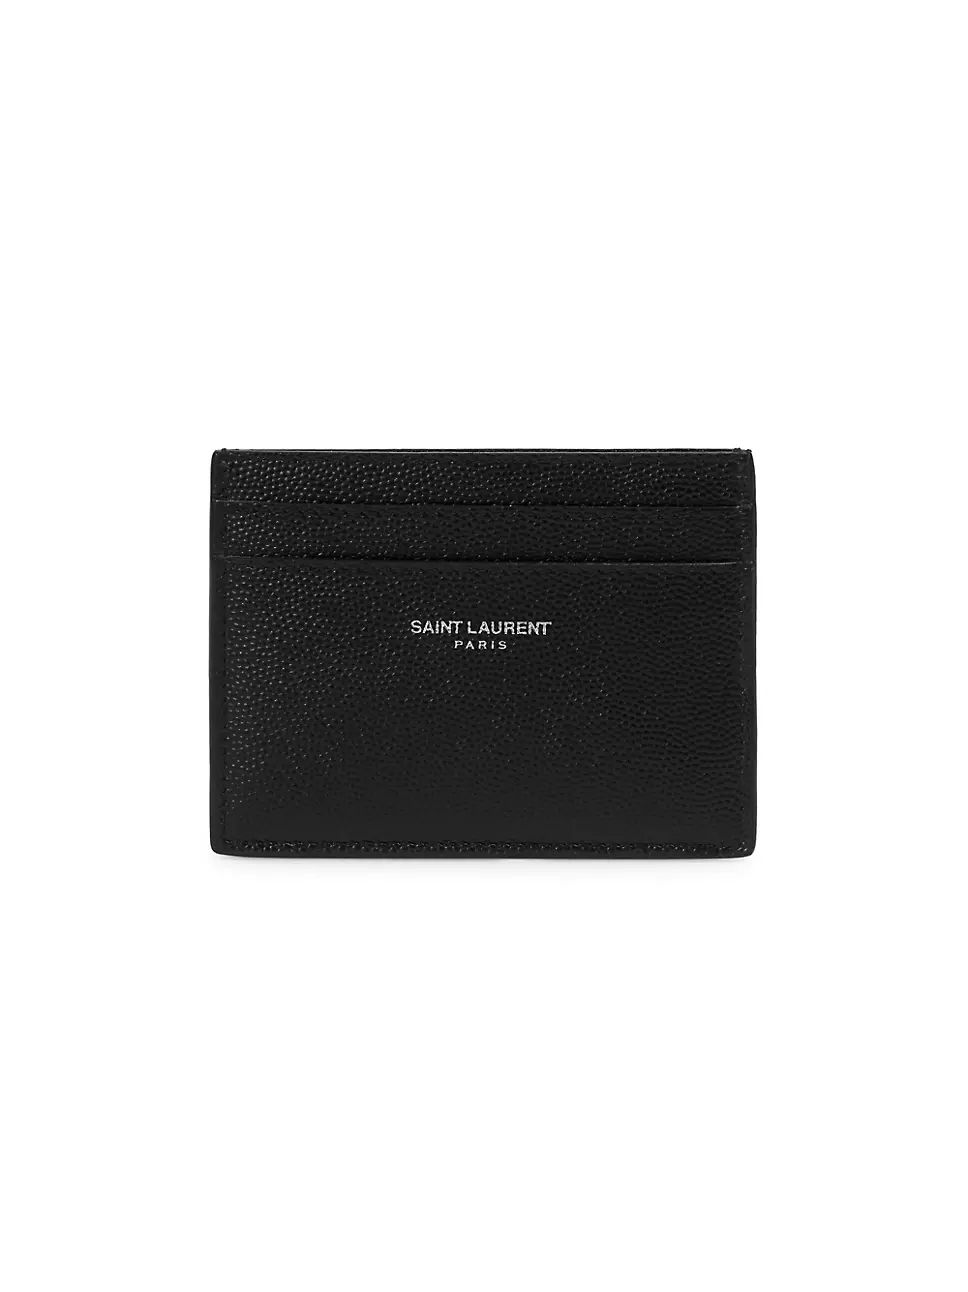 Saint Laurent Grain Leather Card Case | Saks Fifth Avenue